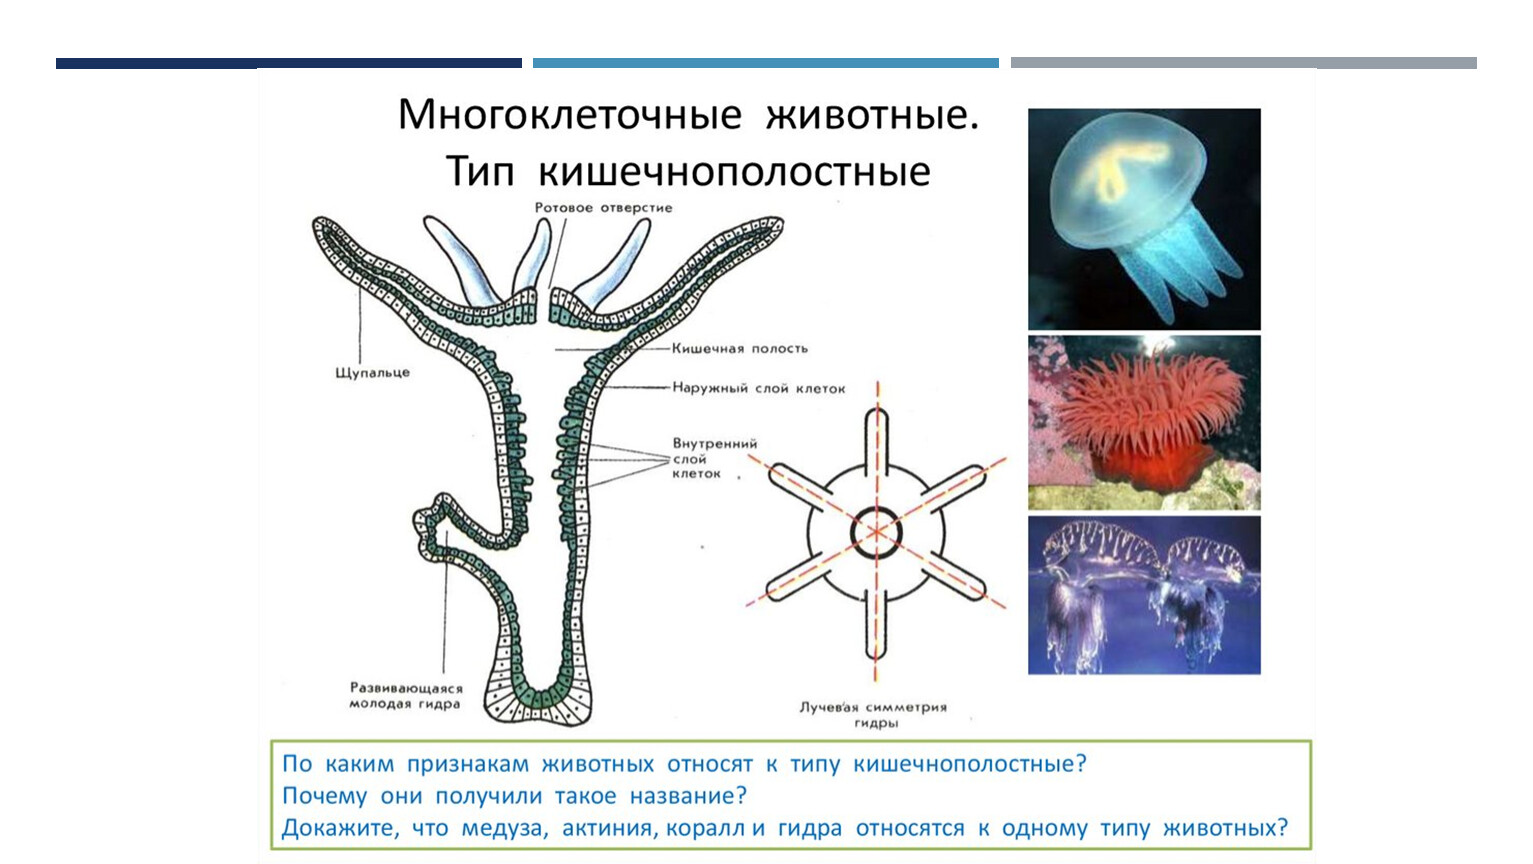 Что характерно для изображенного организма. Кишечнополостные гидра медузы кораллы. Тип Кишечнополостные строение медузы. Многоклеточные животные Тип Кишечнополостные. Гидроидные Сцифоидные коралловые полипы.